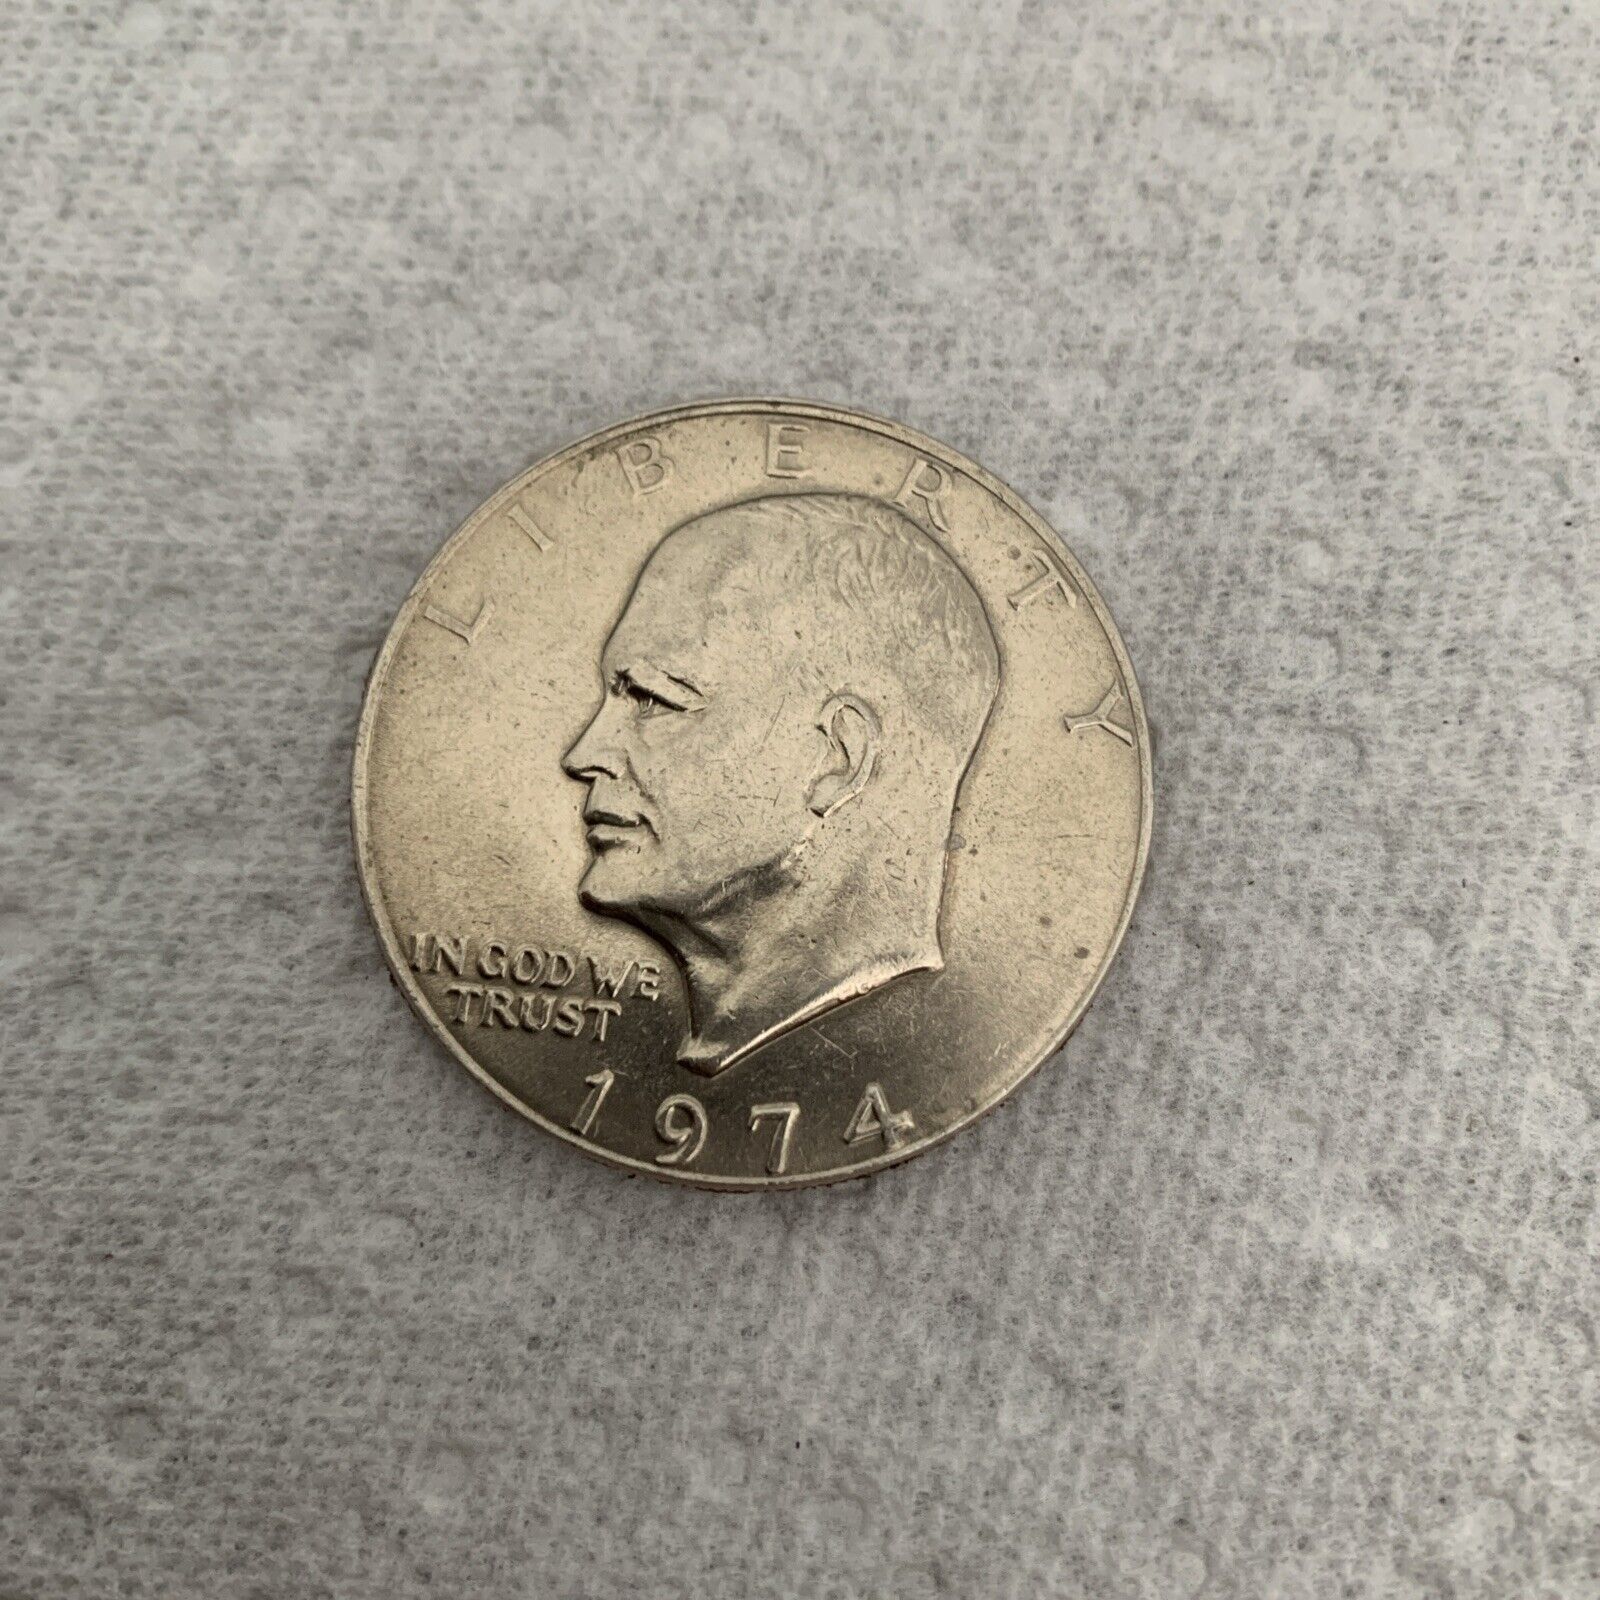 Split Coin Magic . Eisenhower Dollar  Split Coin Trick .🔥 #1